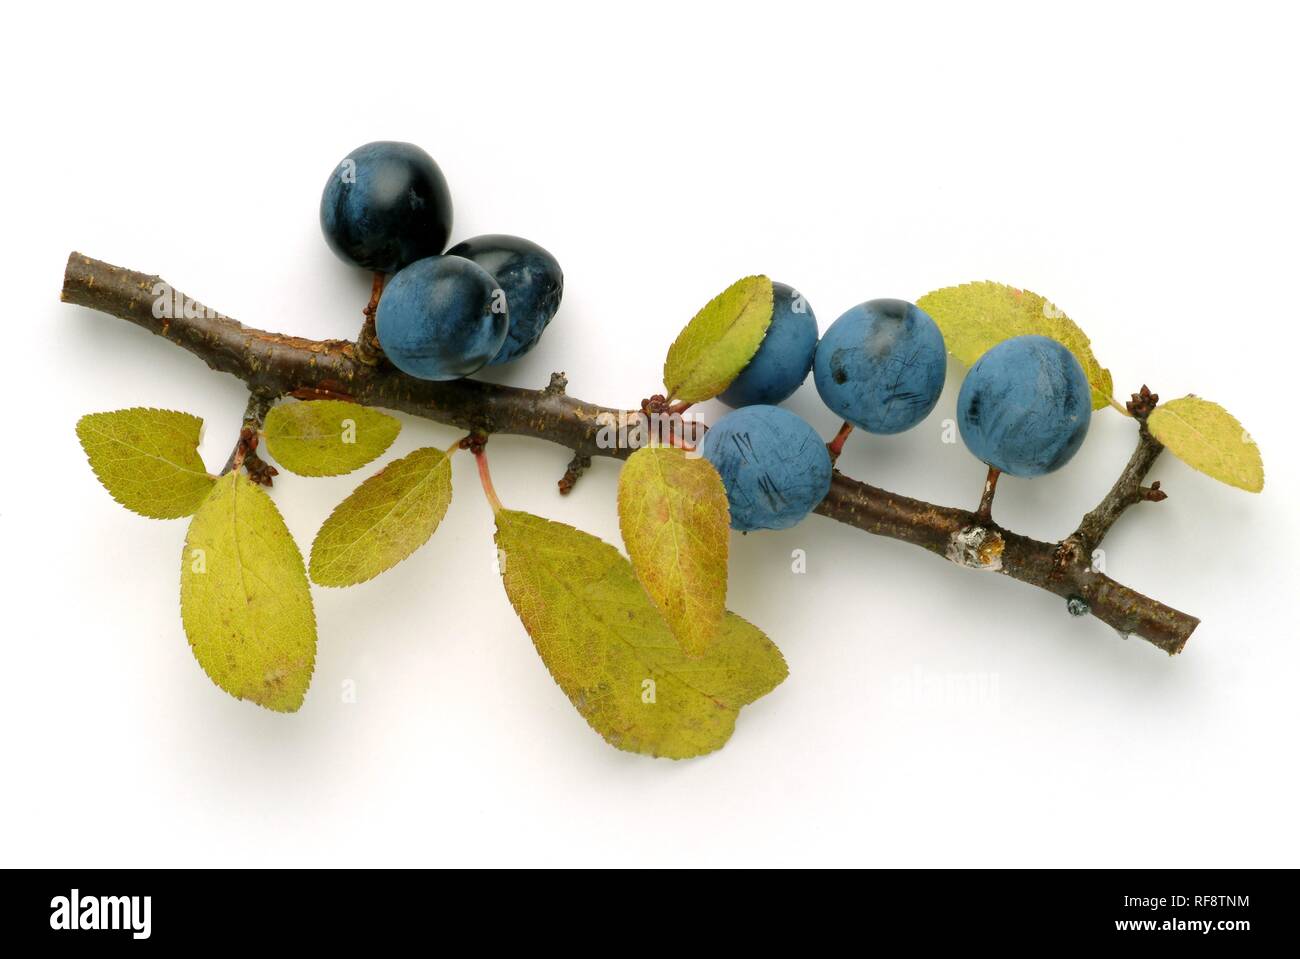 Blackthorn or Sloe (Prunus spinosa) berries Stock Photo